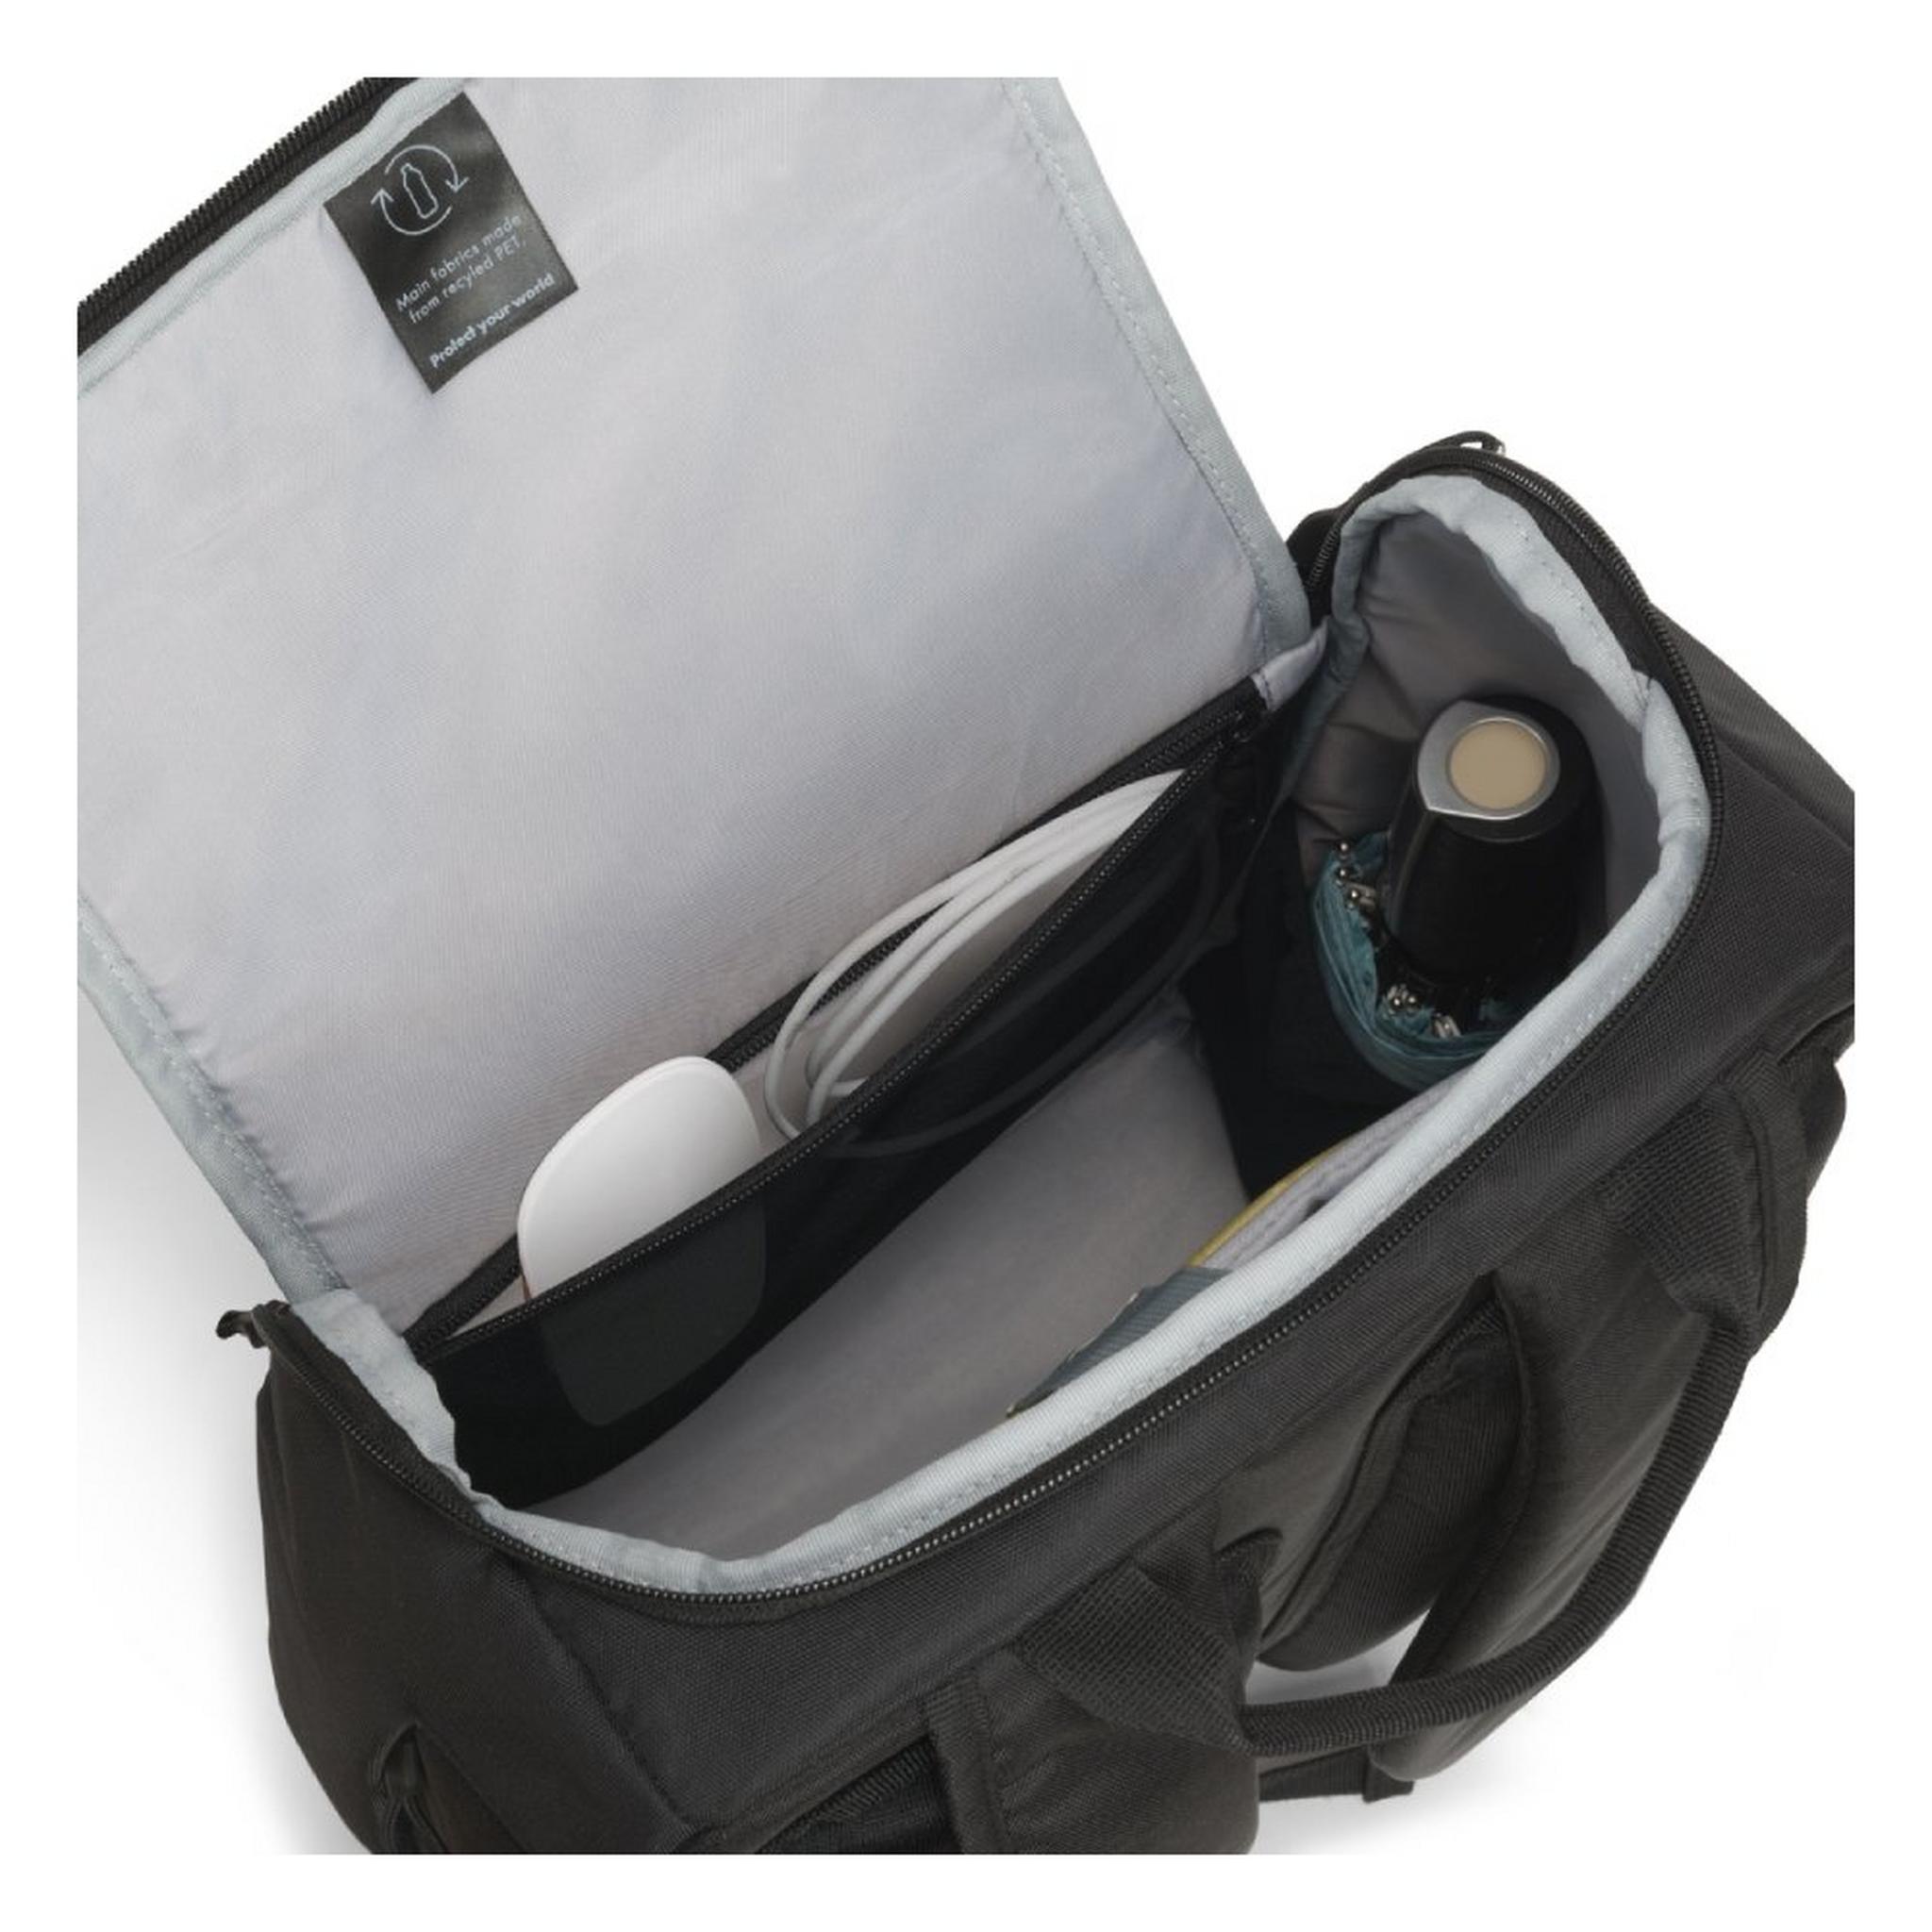 حقيبة الظهر ايكو موشن للابتوب بحجم 15.6 بوصة من ديكوتا - أسود